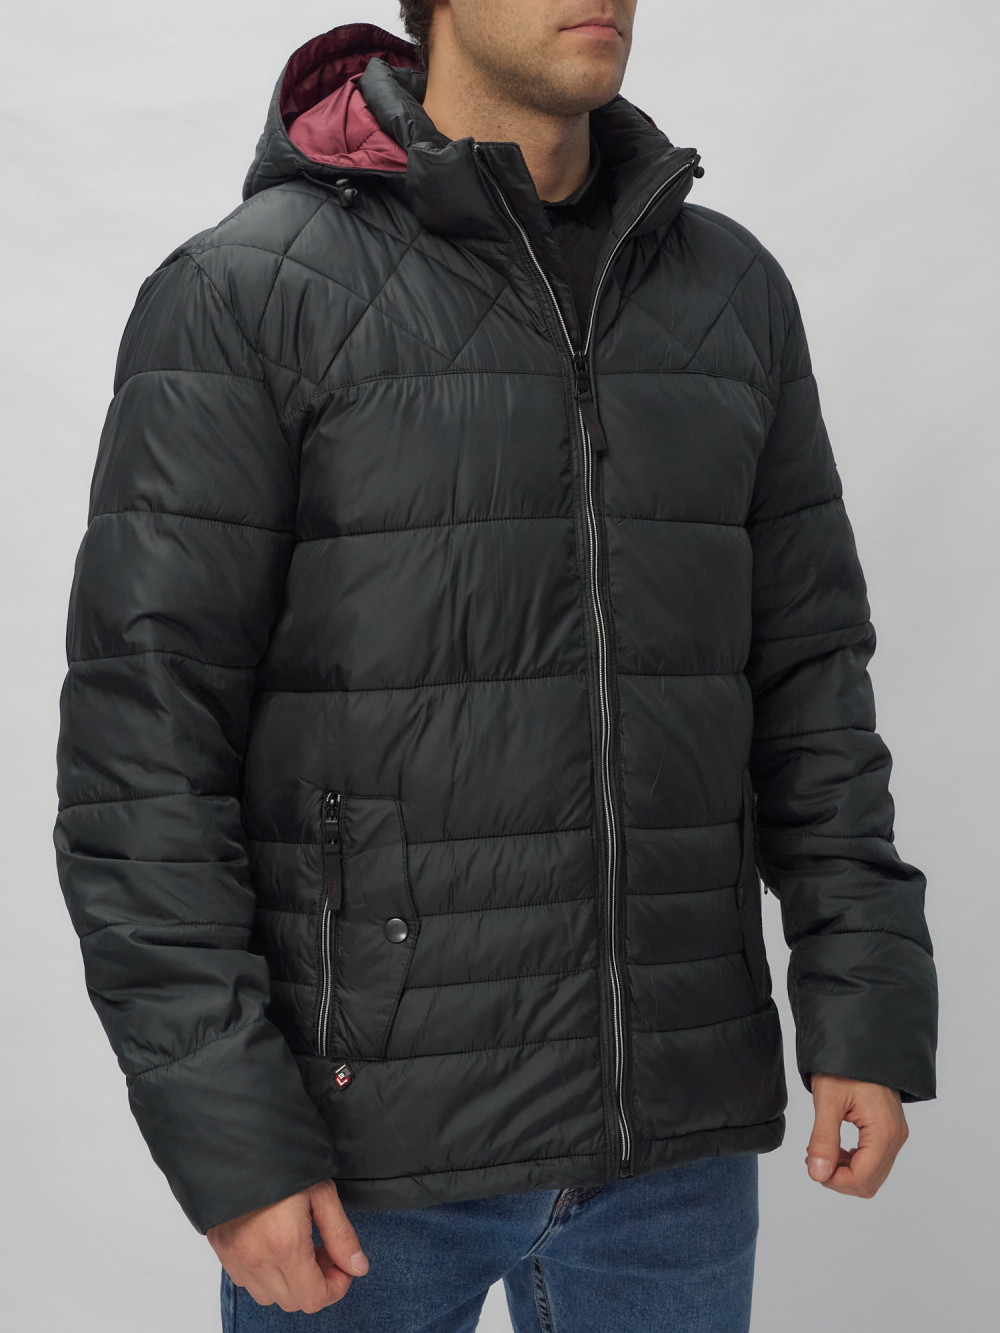 Купить куртку мужскую спортивную весеннюю оптом от производителя недорого в Москве 62179Ch 1